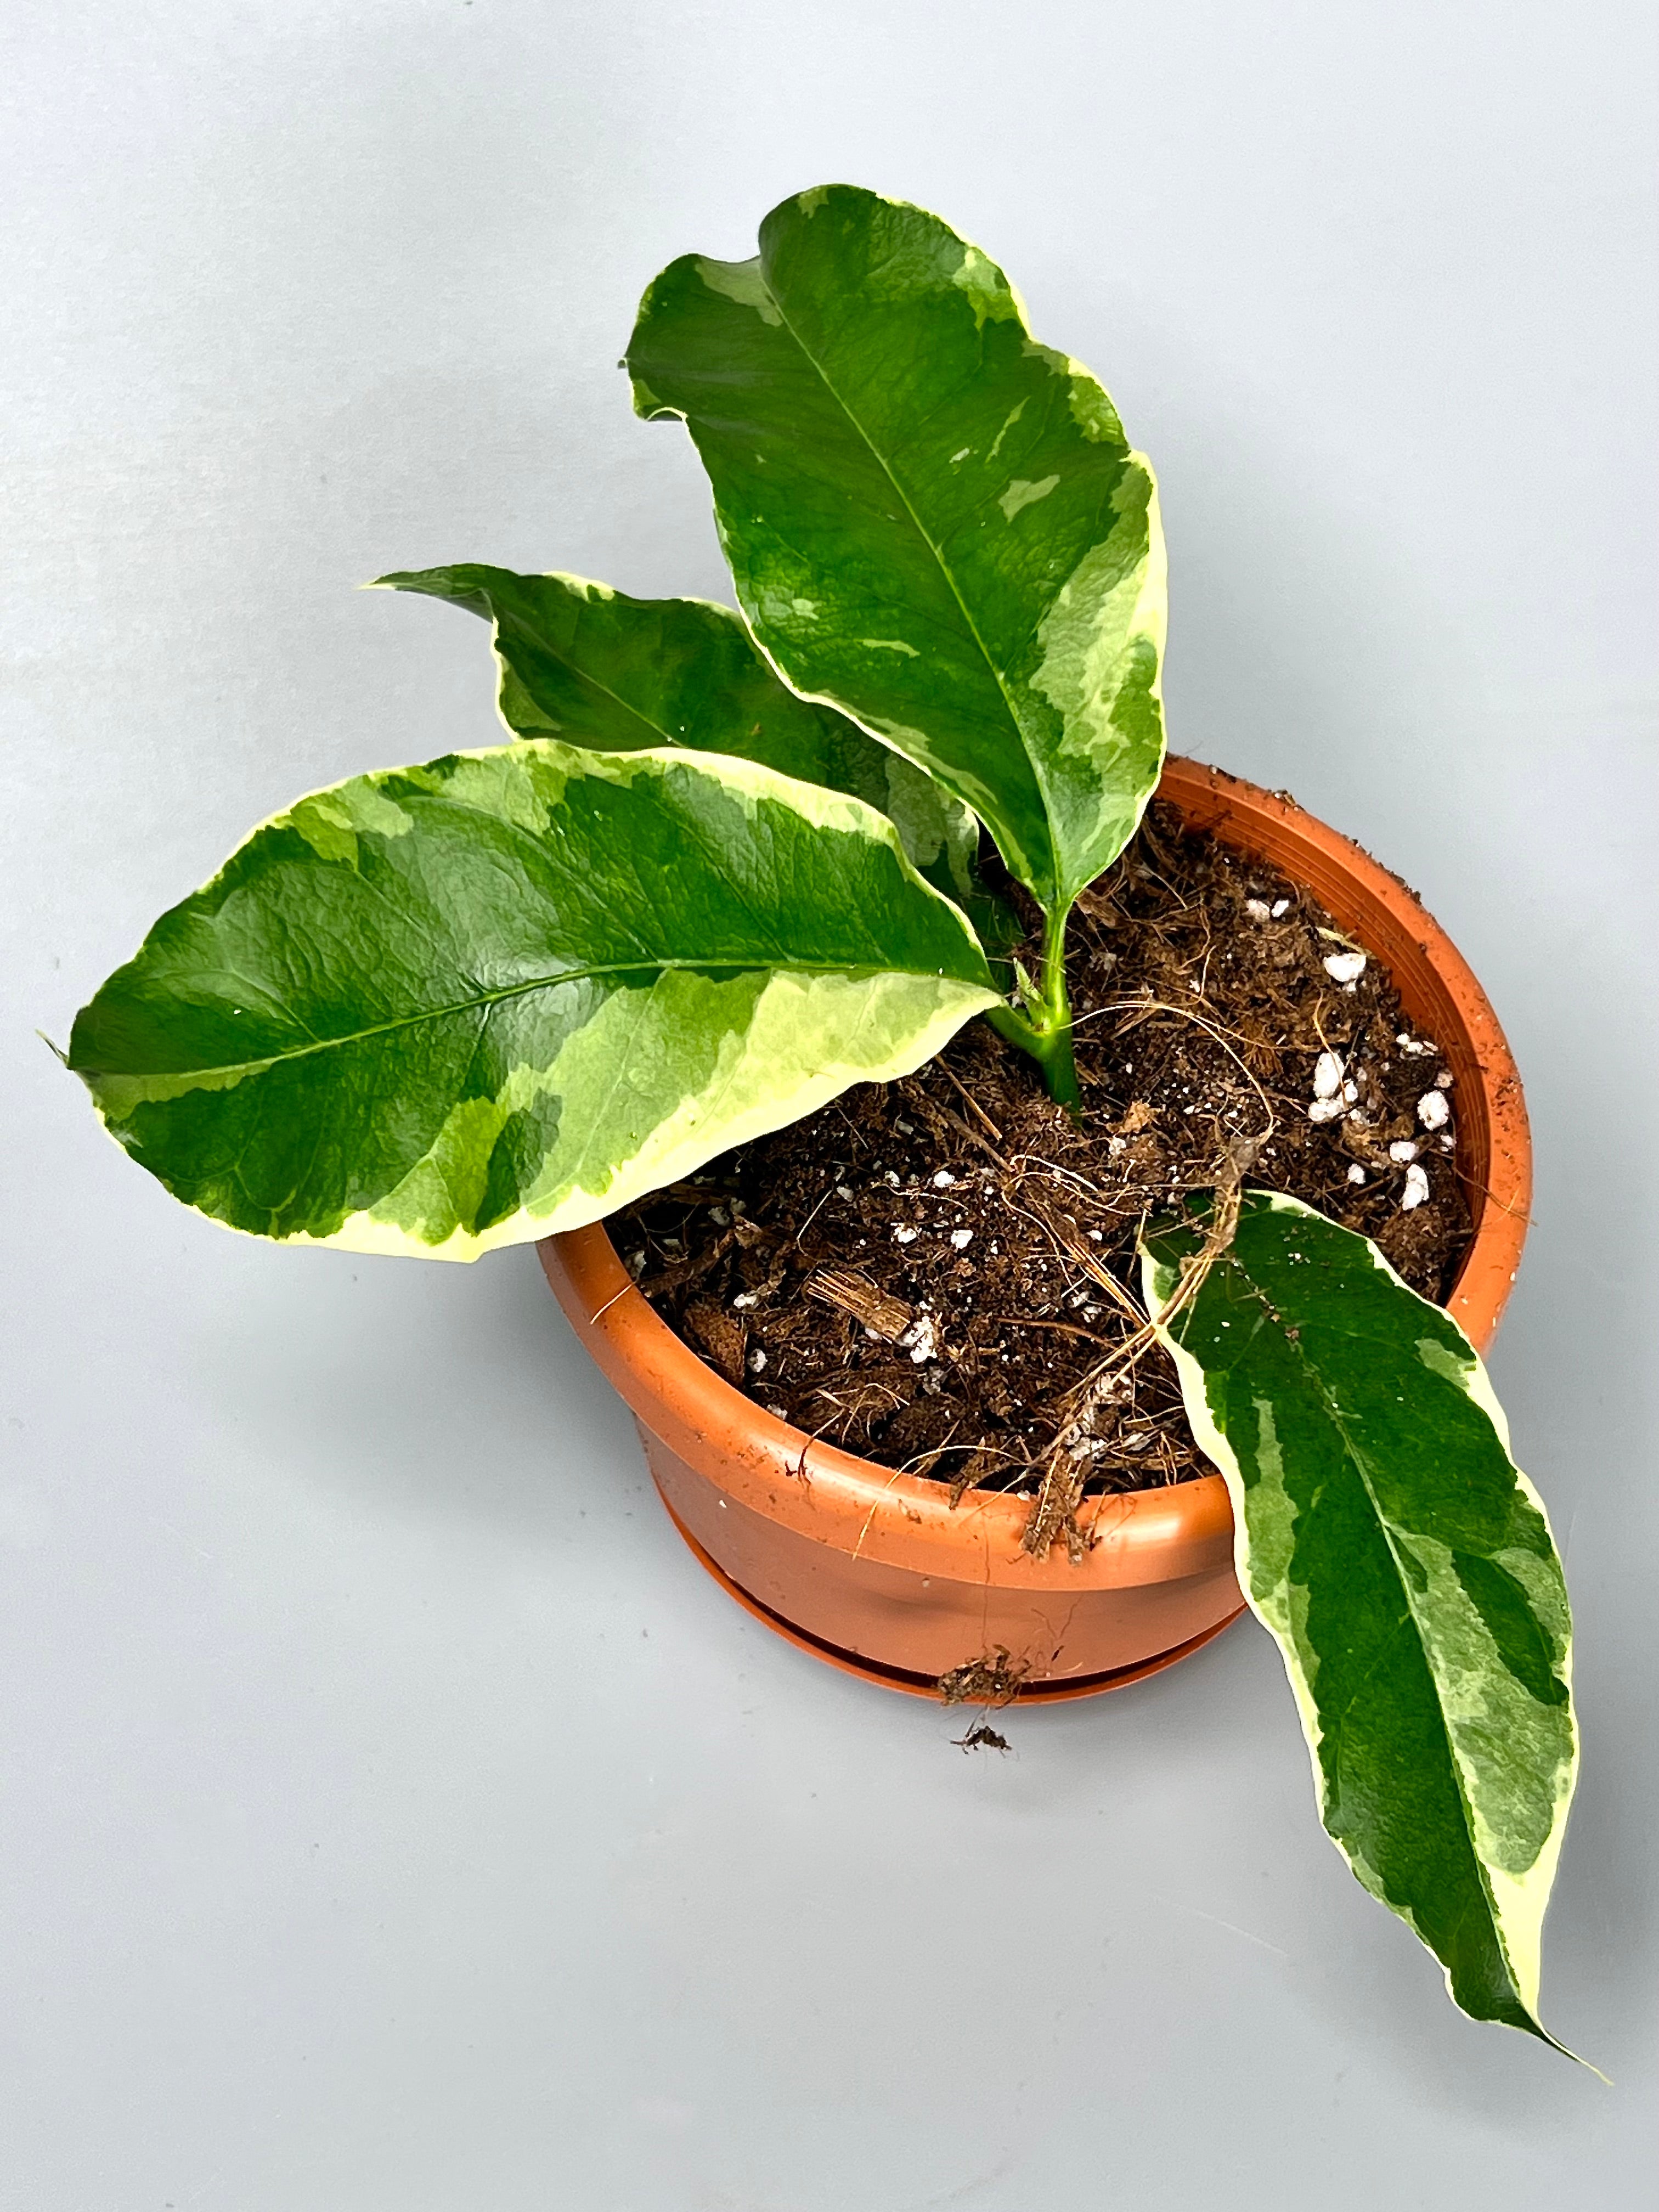 Hoya multiflora variegata Albo (4-6 Leaves)